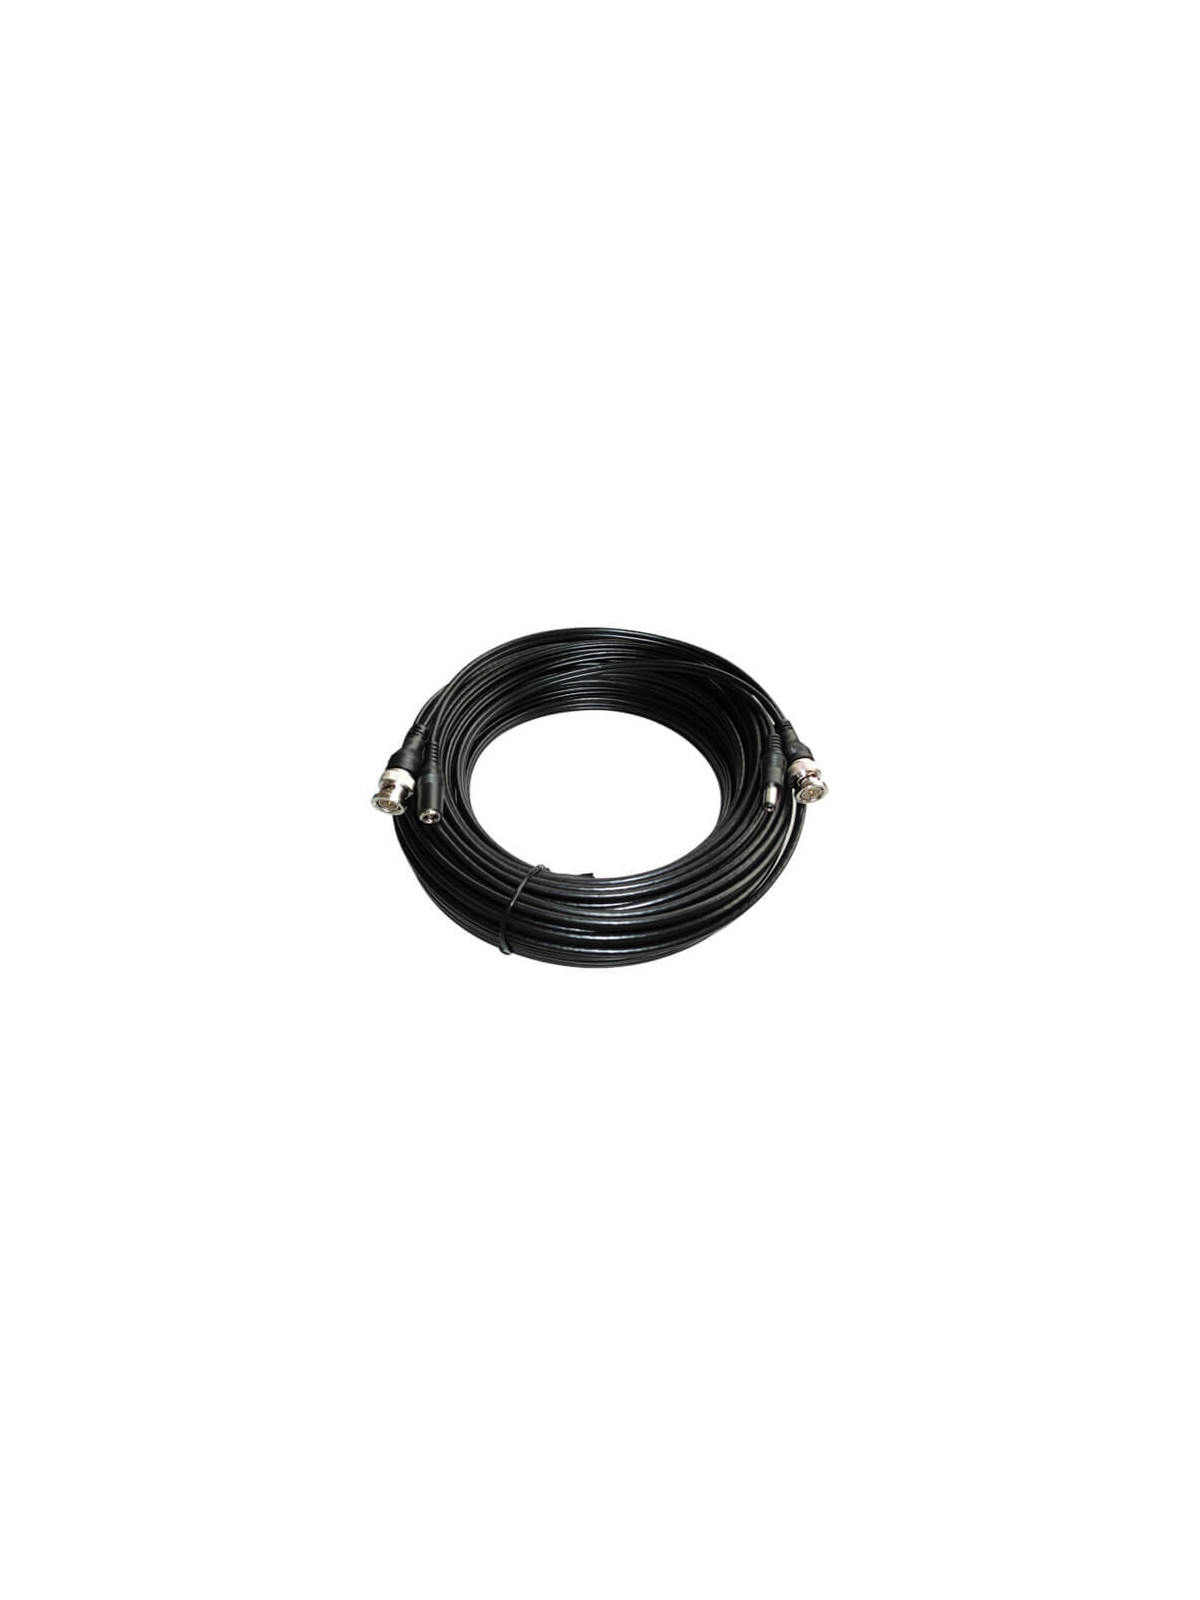 Cable alargo  coaxial RG59 BNC + alimentación negro (40m)